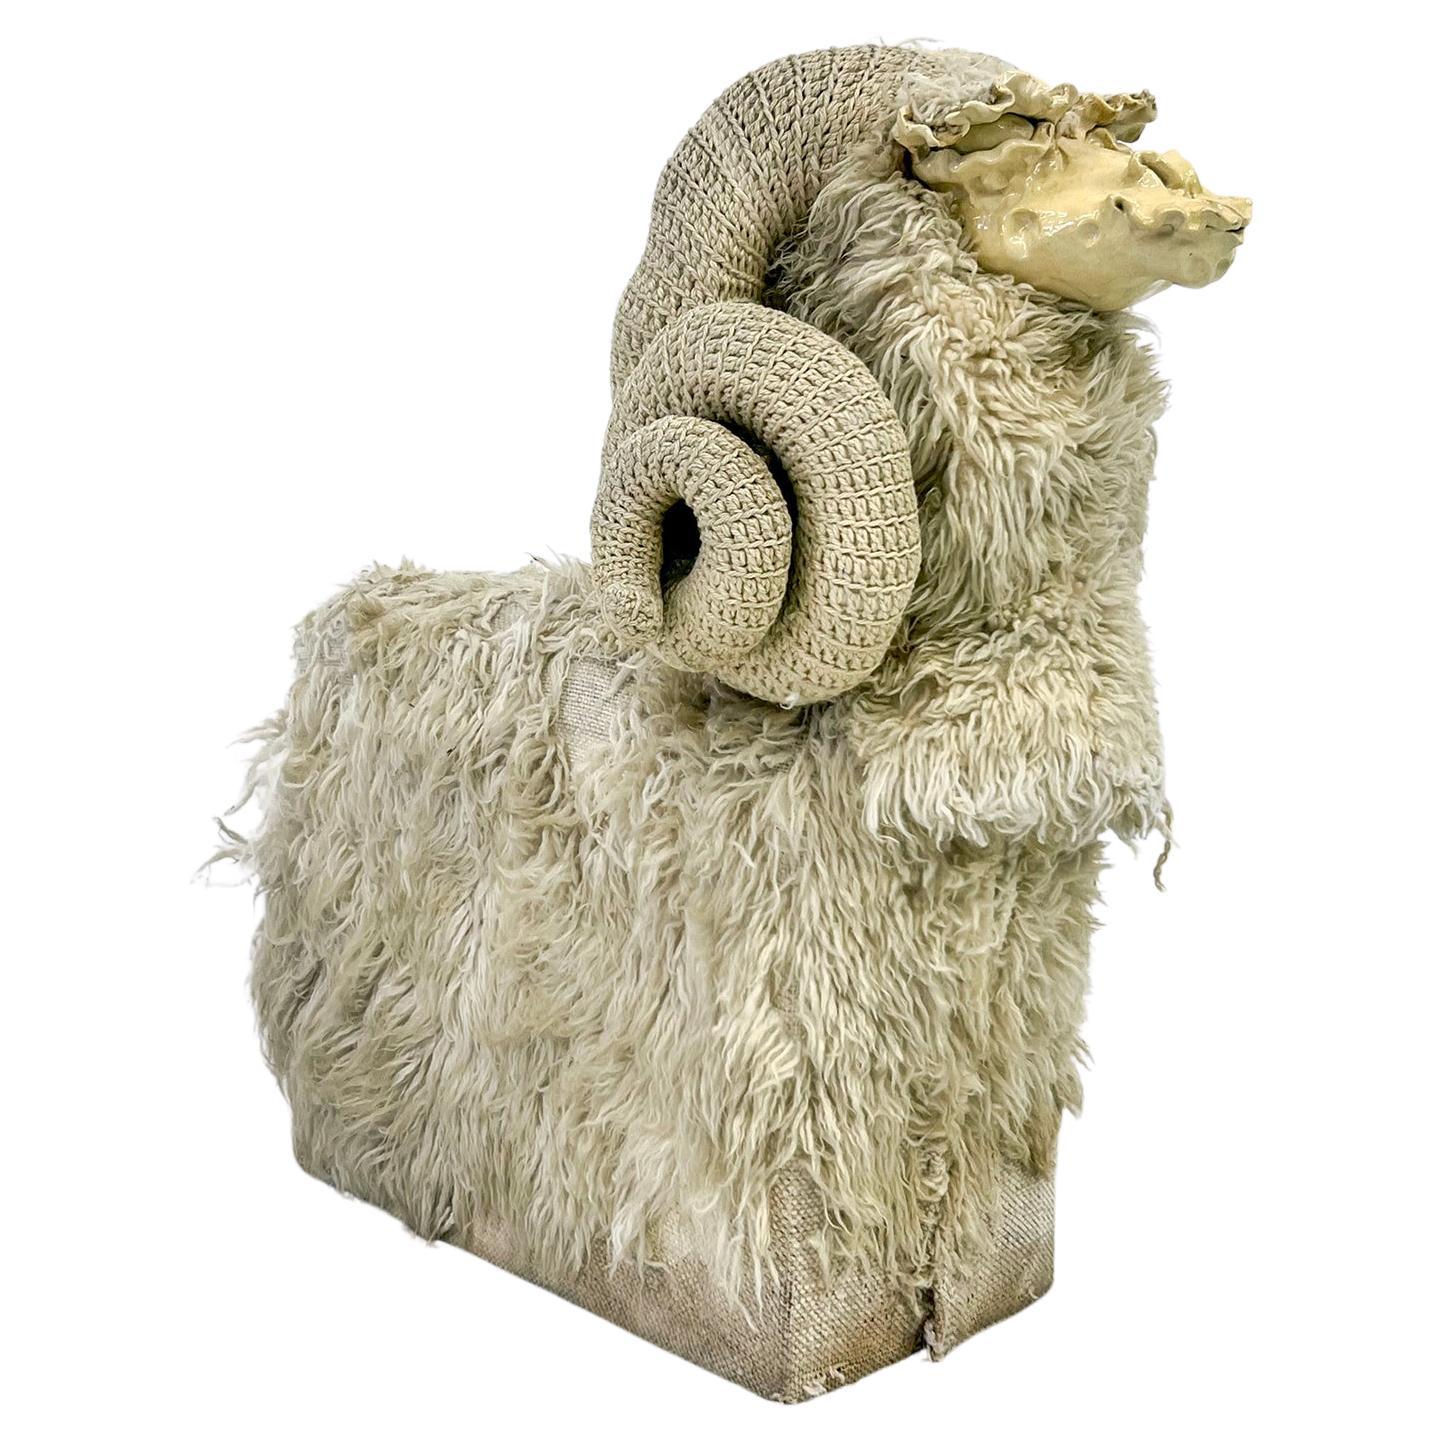 Banc de sculpture de moutons d'aubépine d'Edna Cataldo